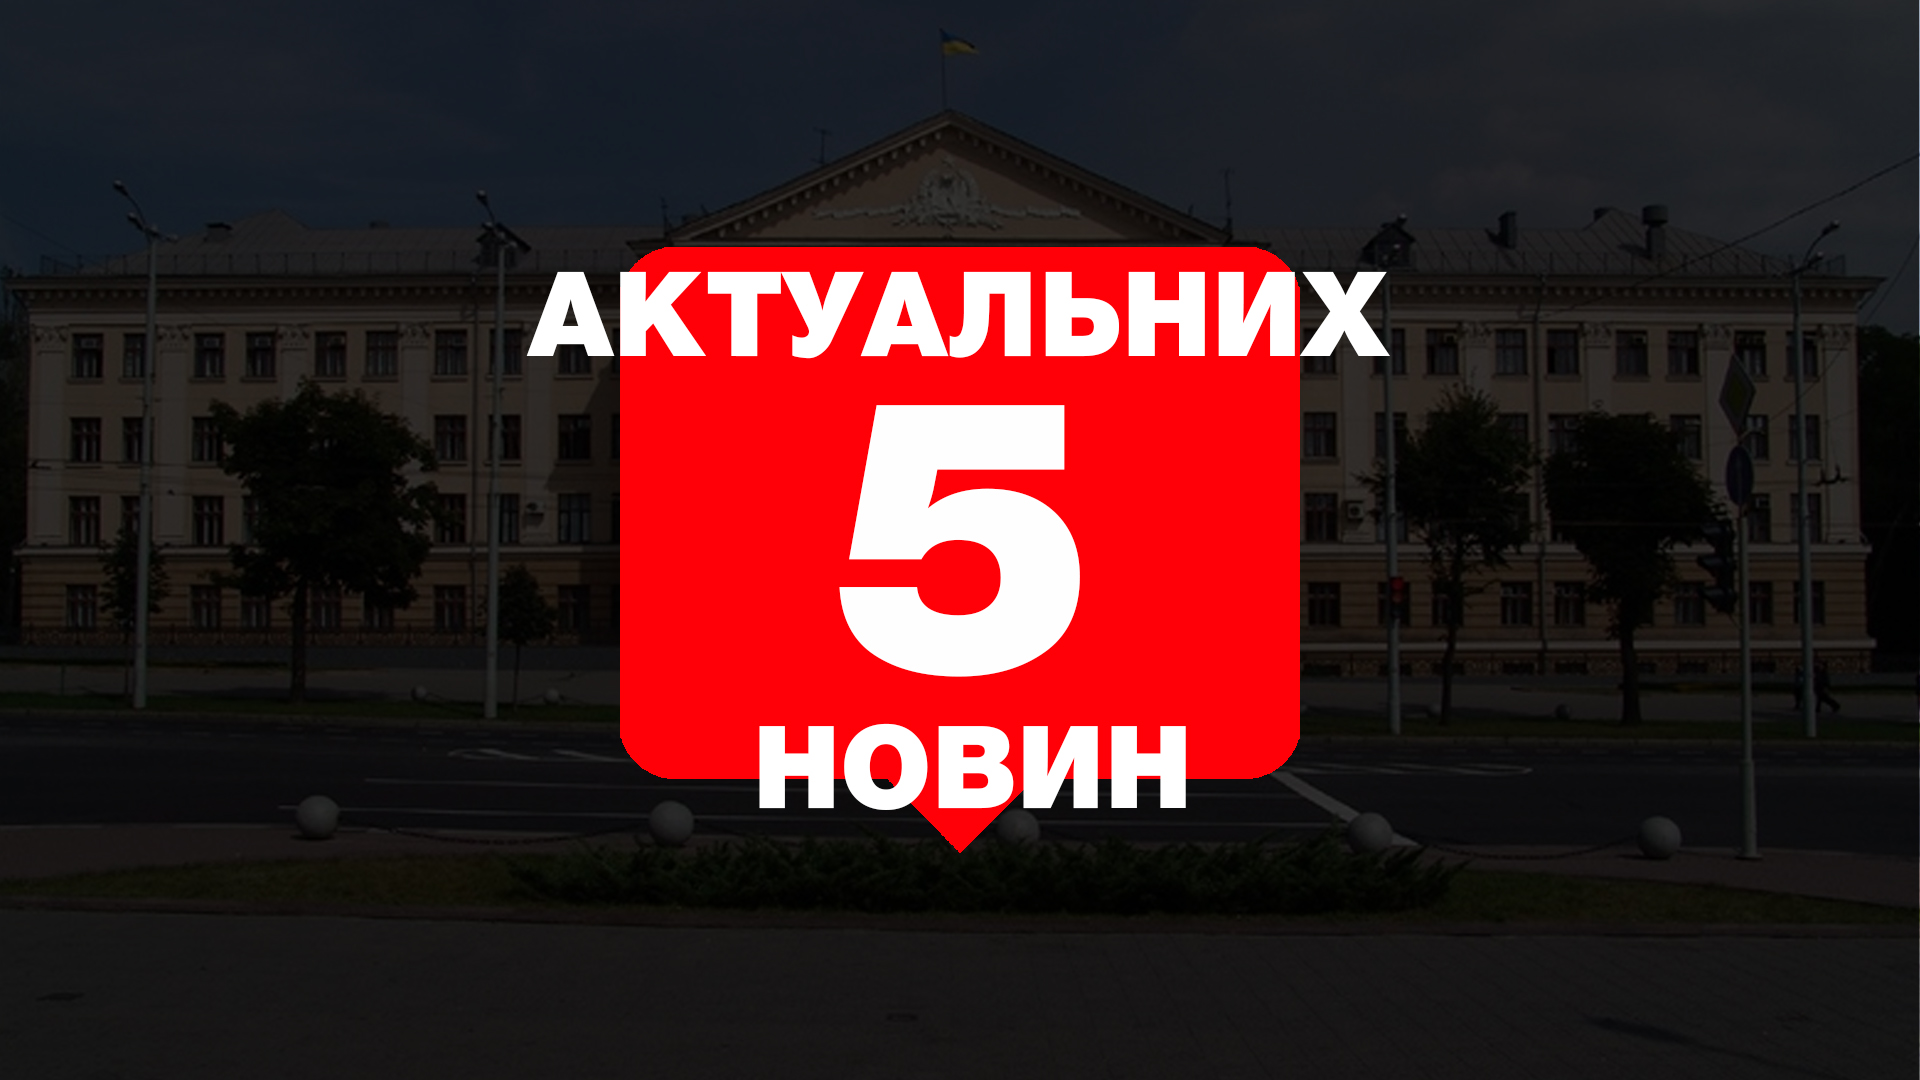 Запорожский курорт в топе, ДСК может постичь участь “Константы”, эко-выпускной – главные новости Запорожья за четверг